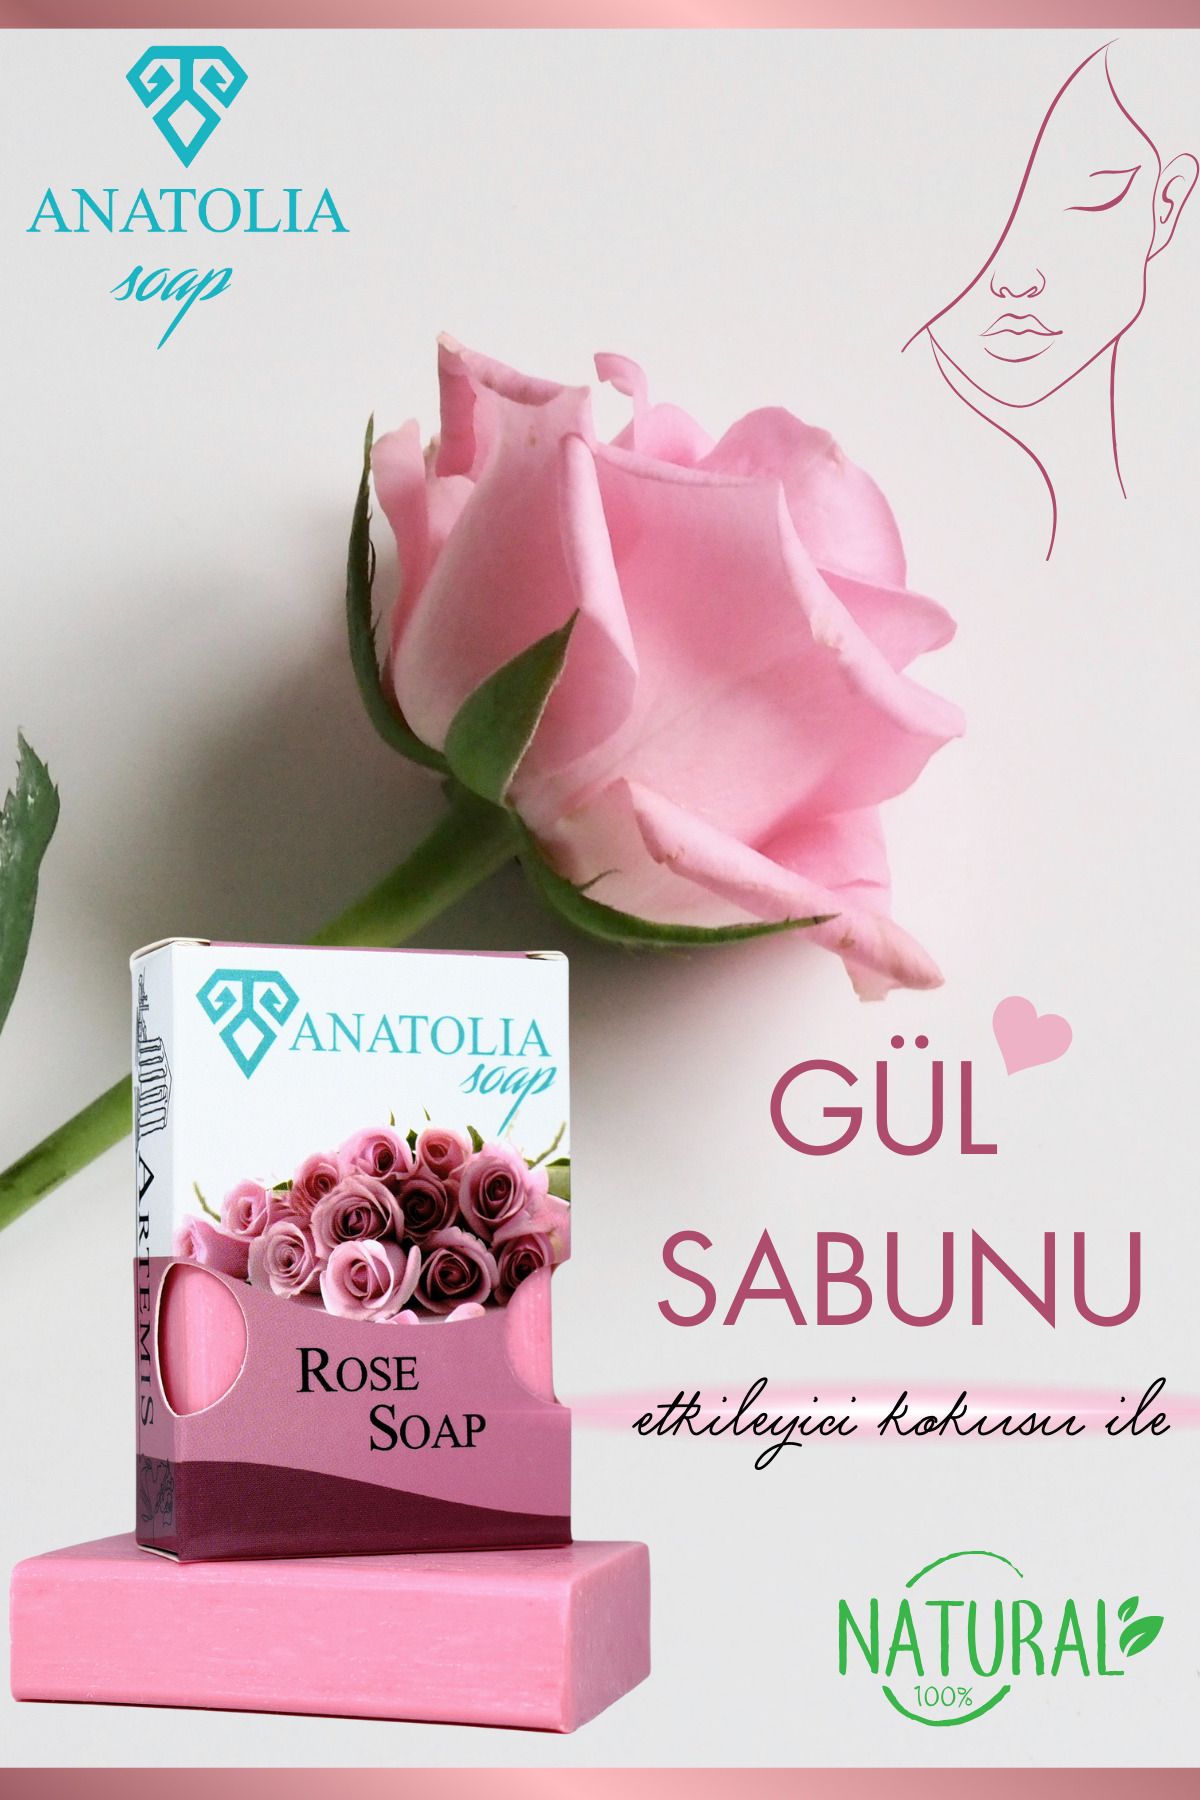 Anatolia Soap Gül Sabunu, Gül Yaprağı Sabunu Aroma Terapi Cilt Besleyici Bitkisel 100 gr,